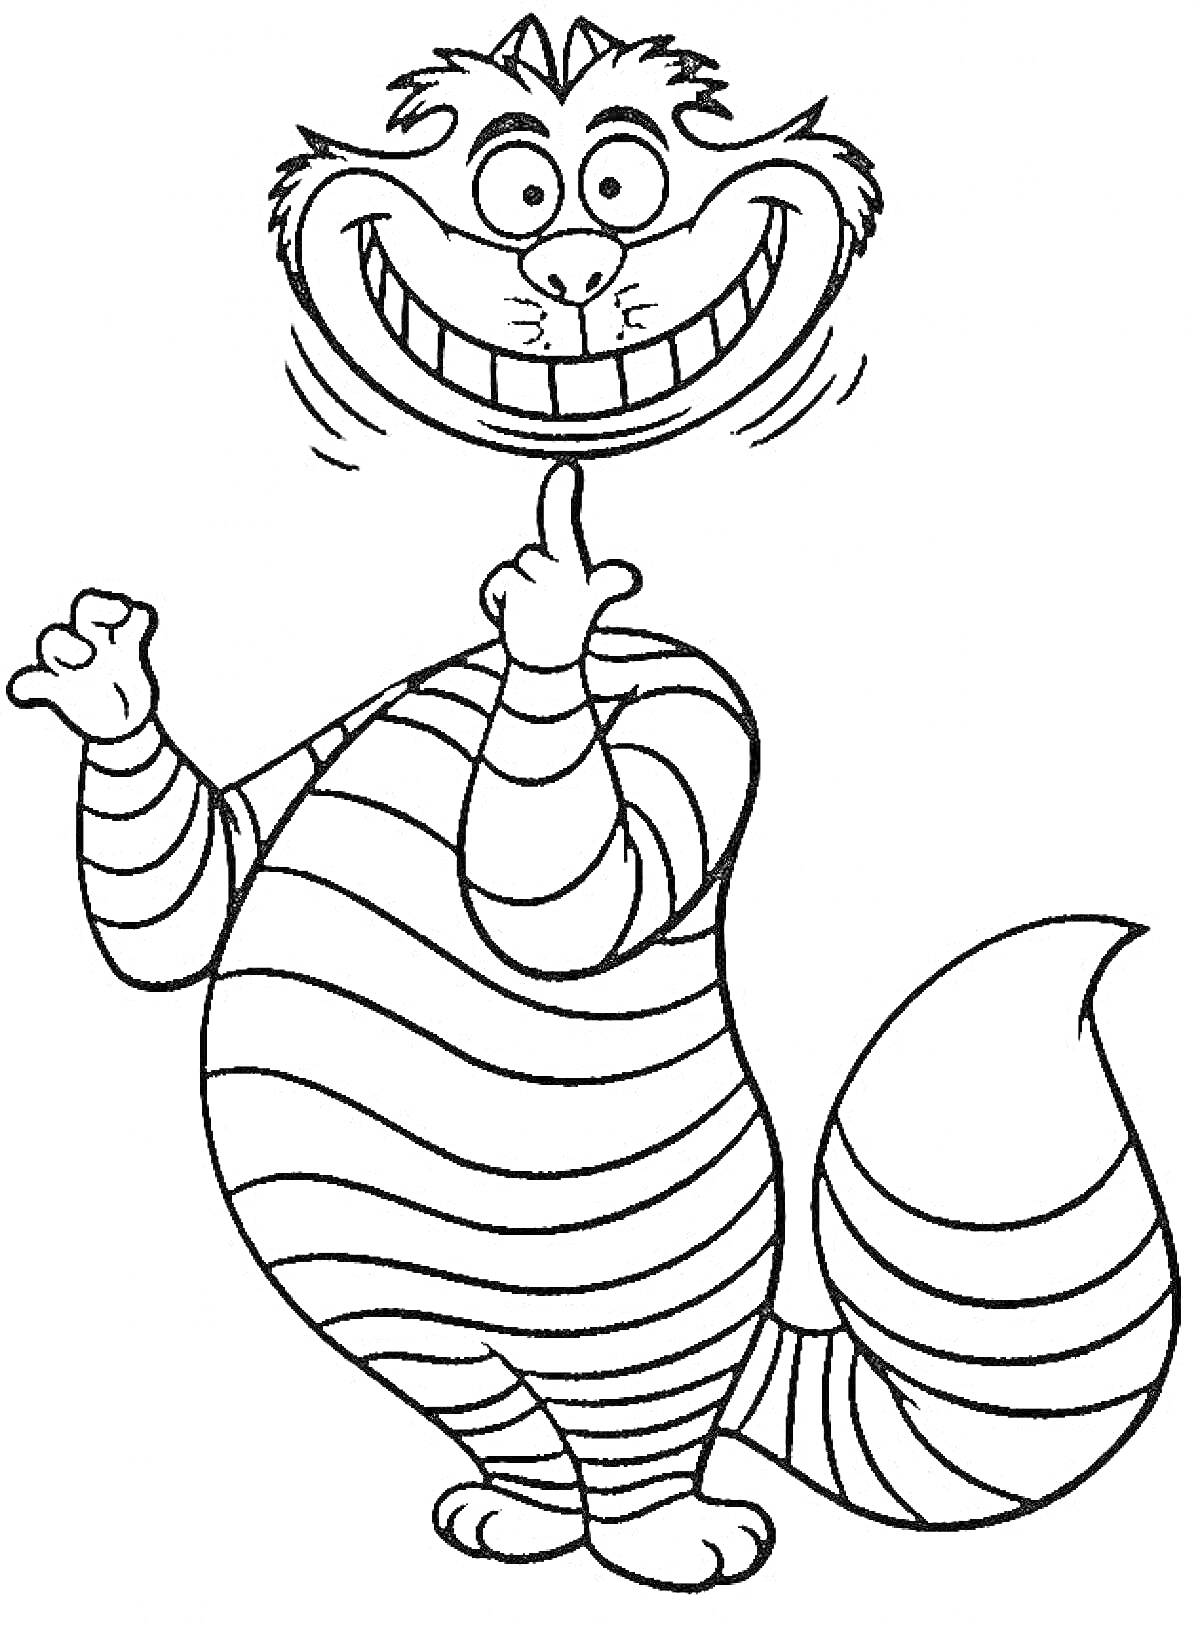 Чеширский кот улыбается, стоя на задних лапах и показывая один палец вверх, полосатый хвост